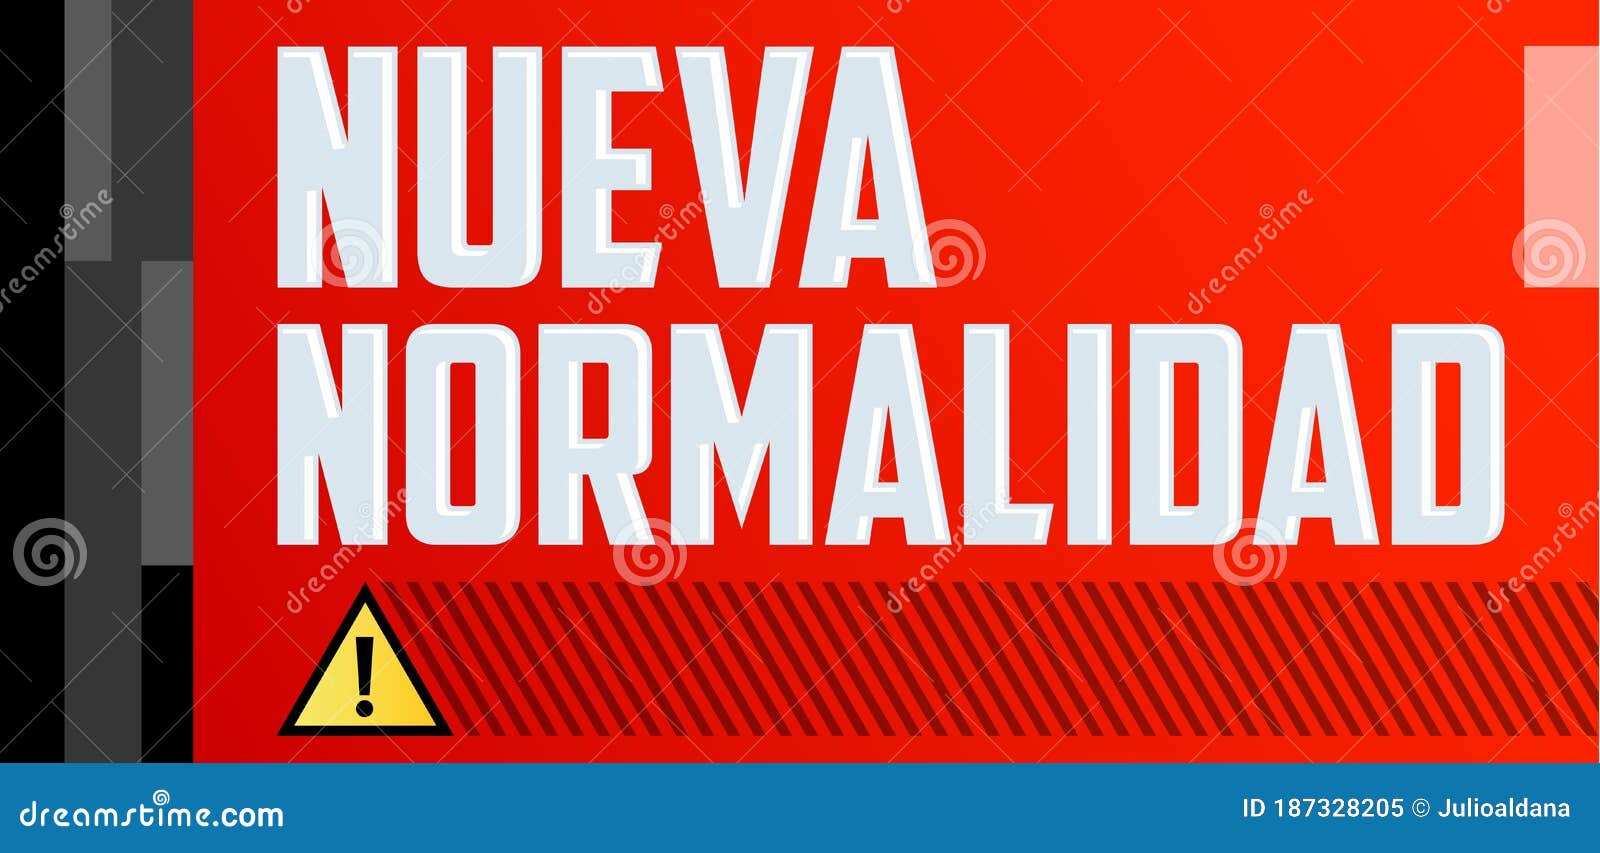 nueva normalidad, new normal spanish text,  .